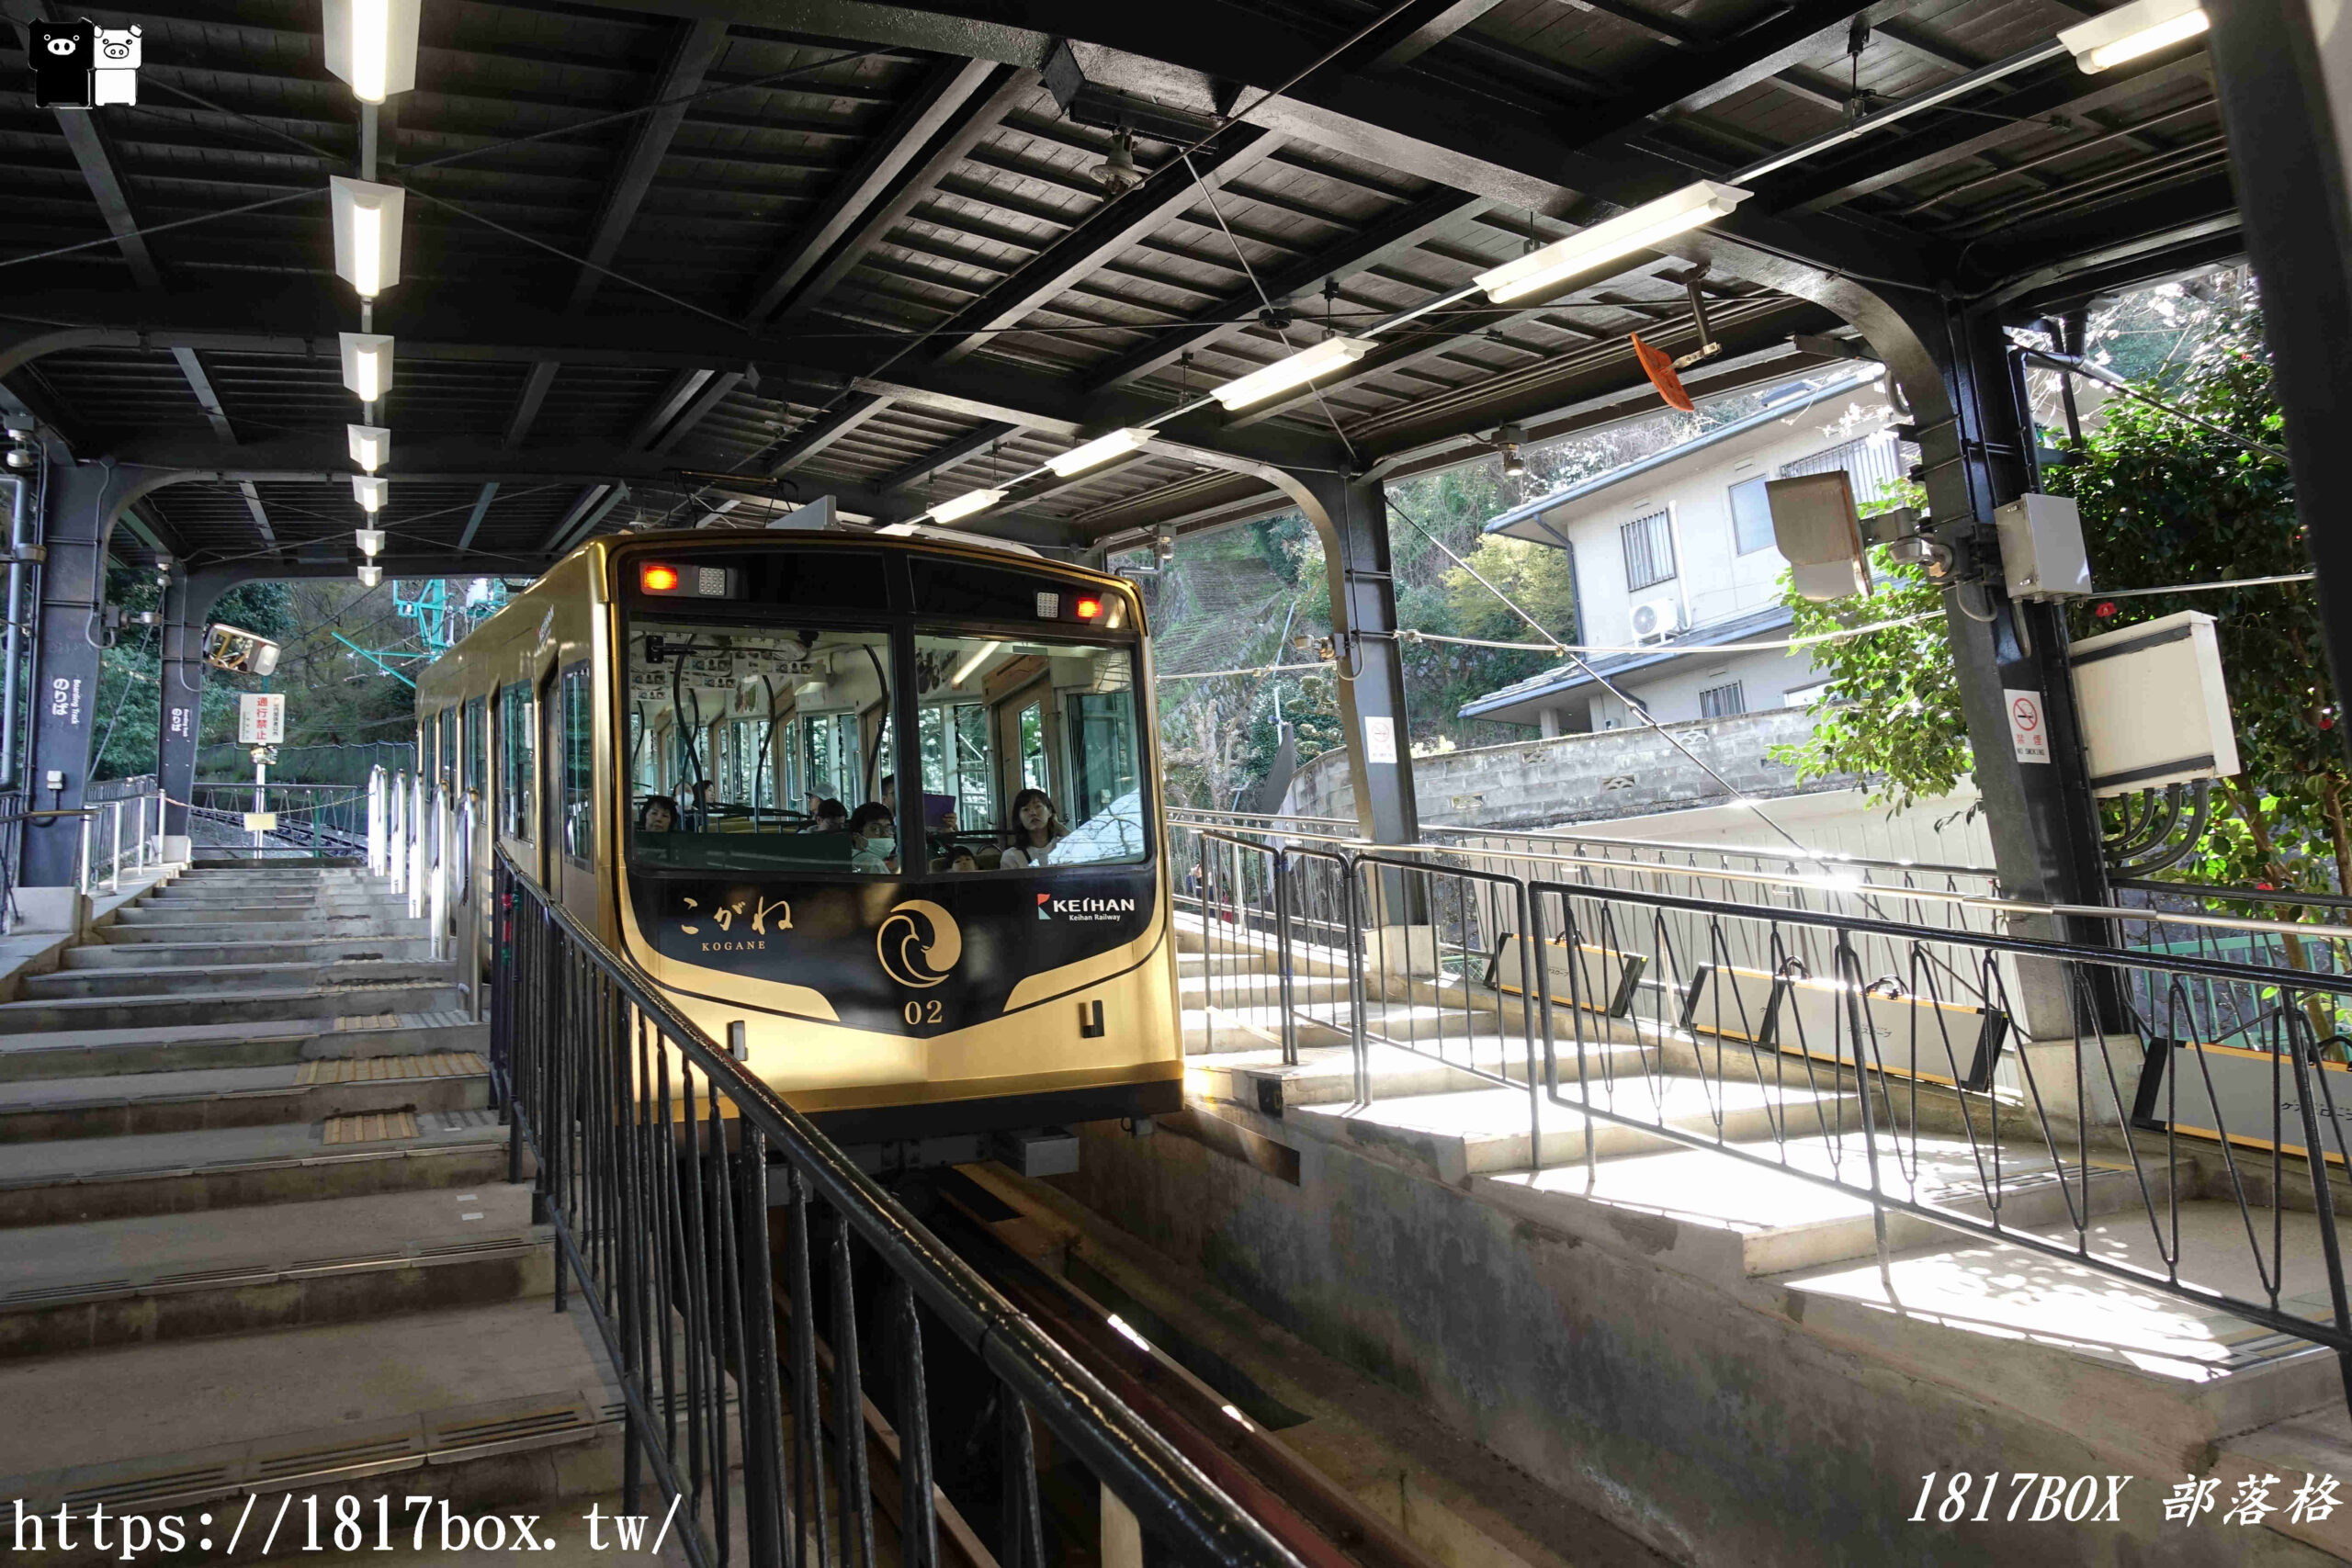 【京都景點】石清水八幡宮參道纜車。從車窗欣賞京都以南景色